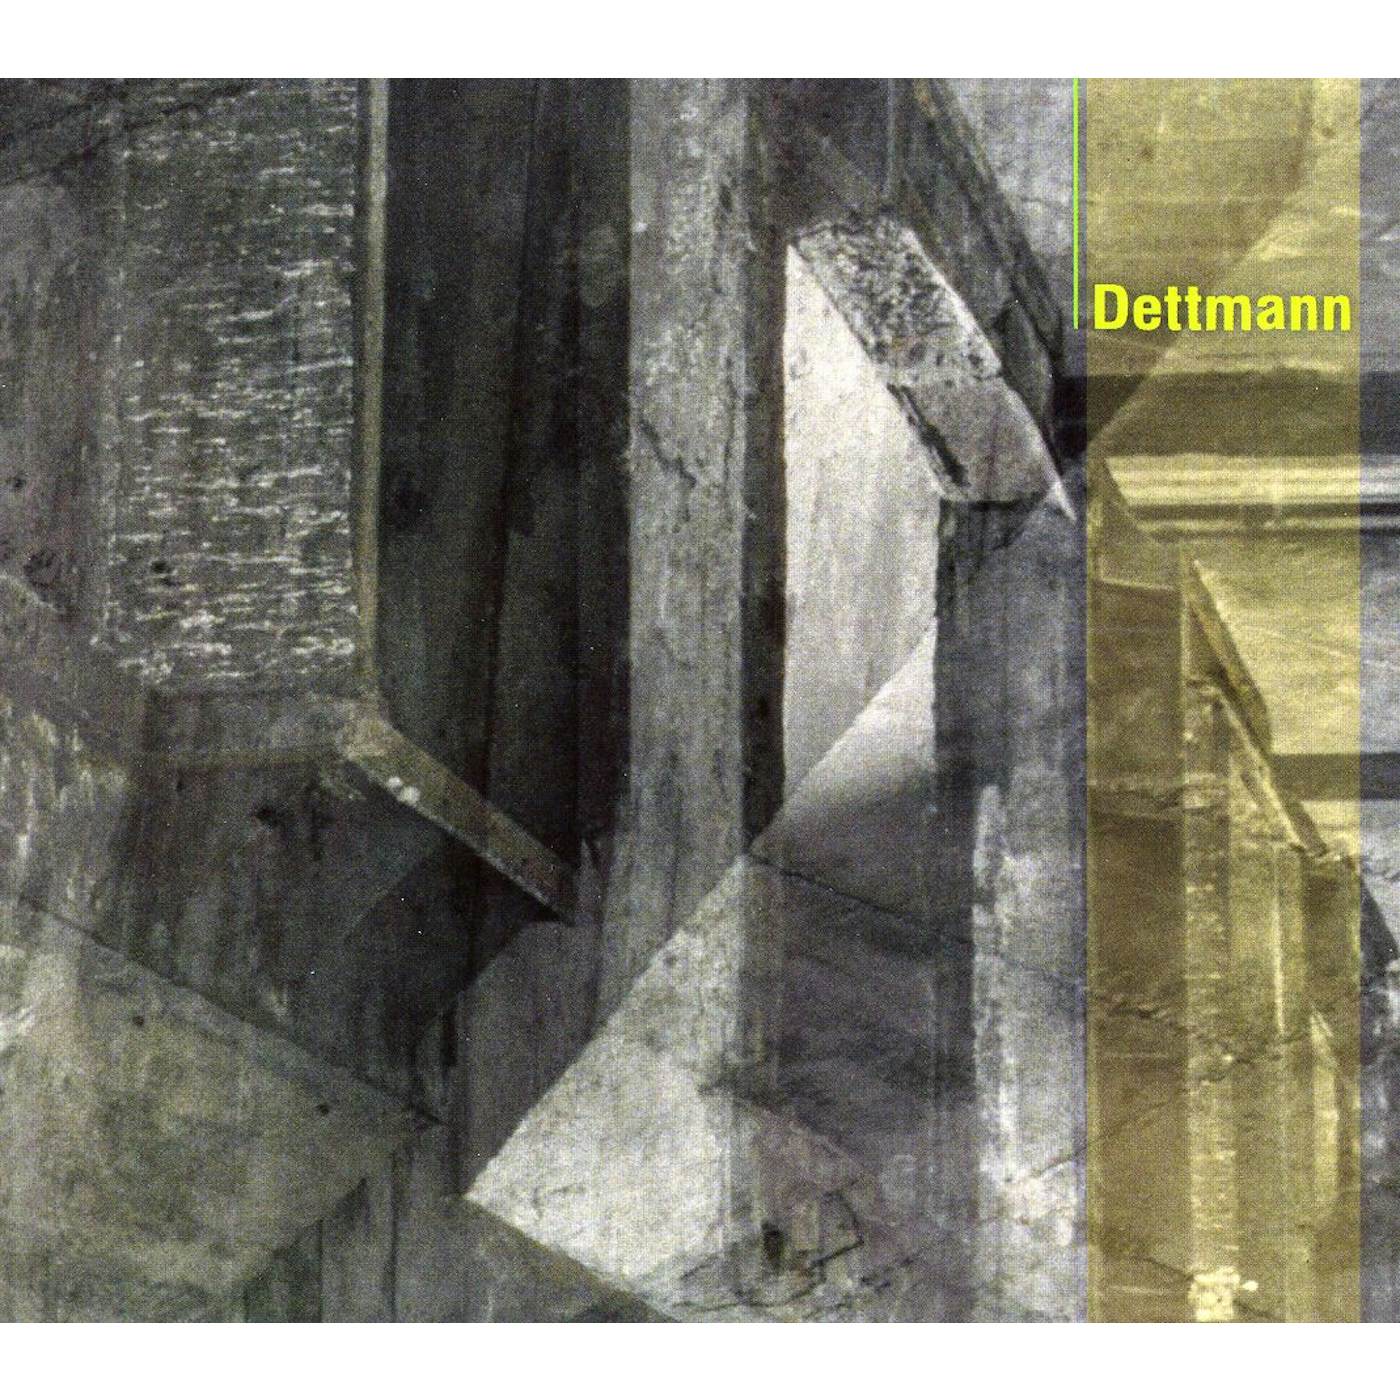 Marcel Dettmann DETTMANN CD